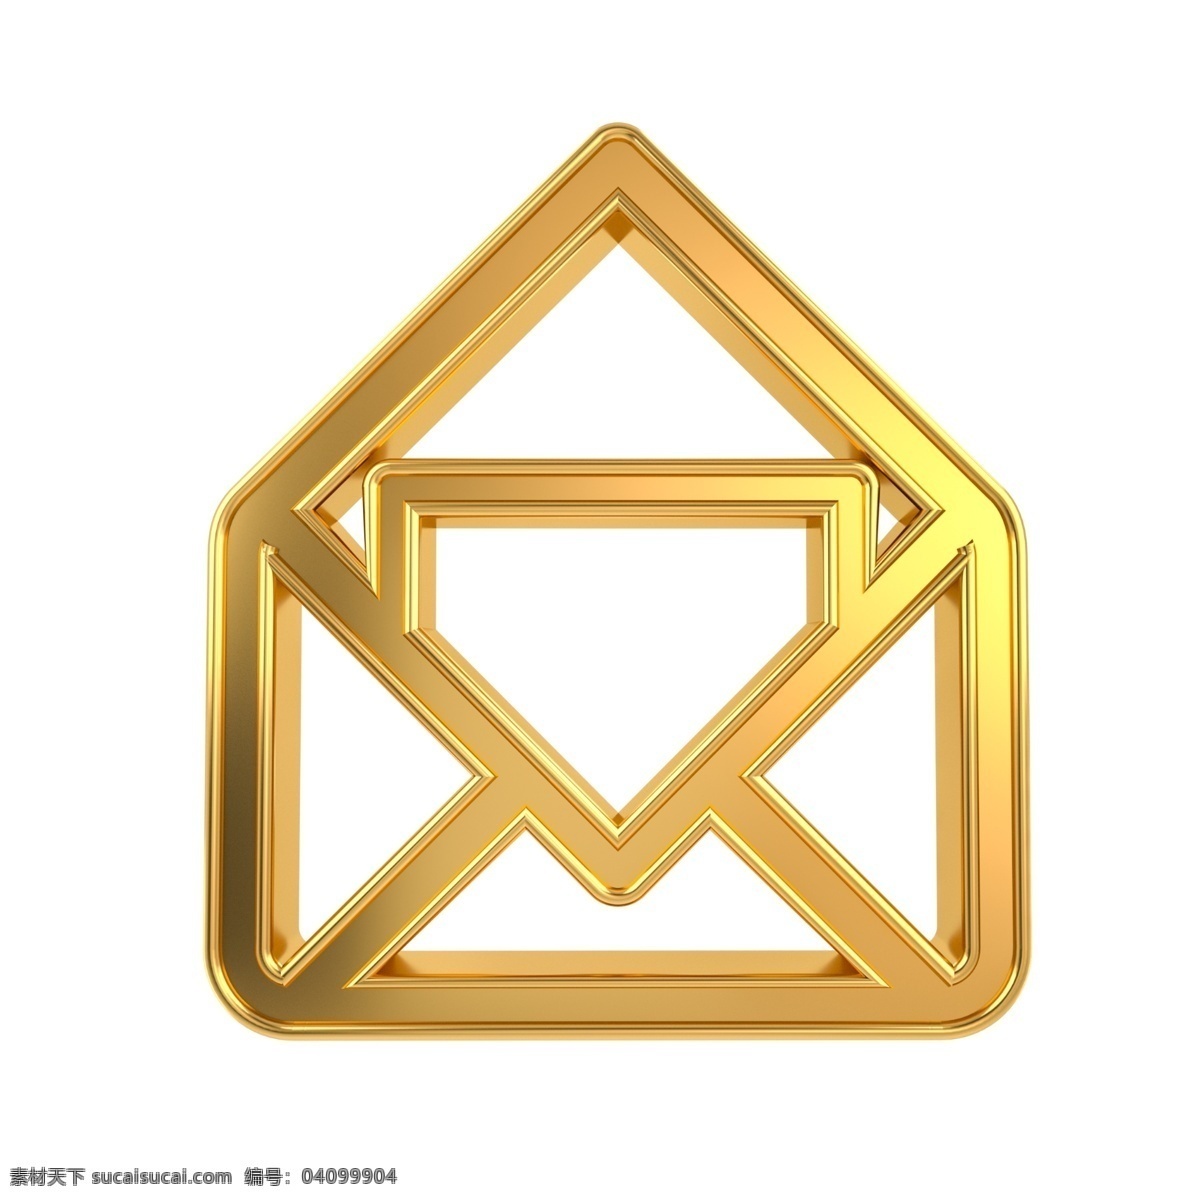 c4d 金属 立体 邮箱 图标 3d 金属质感 金色 名片设计 常用 邮箱图标 平面设计配图